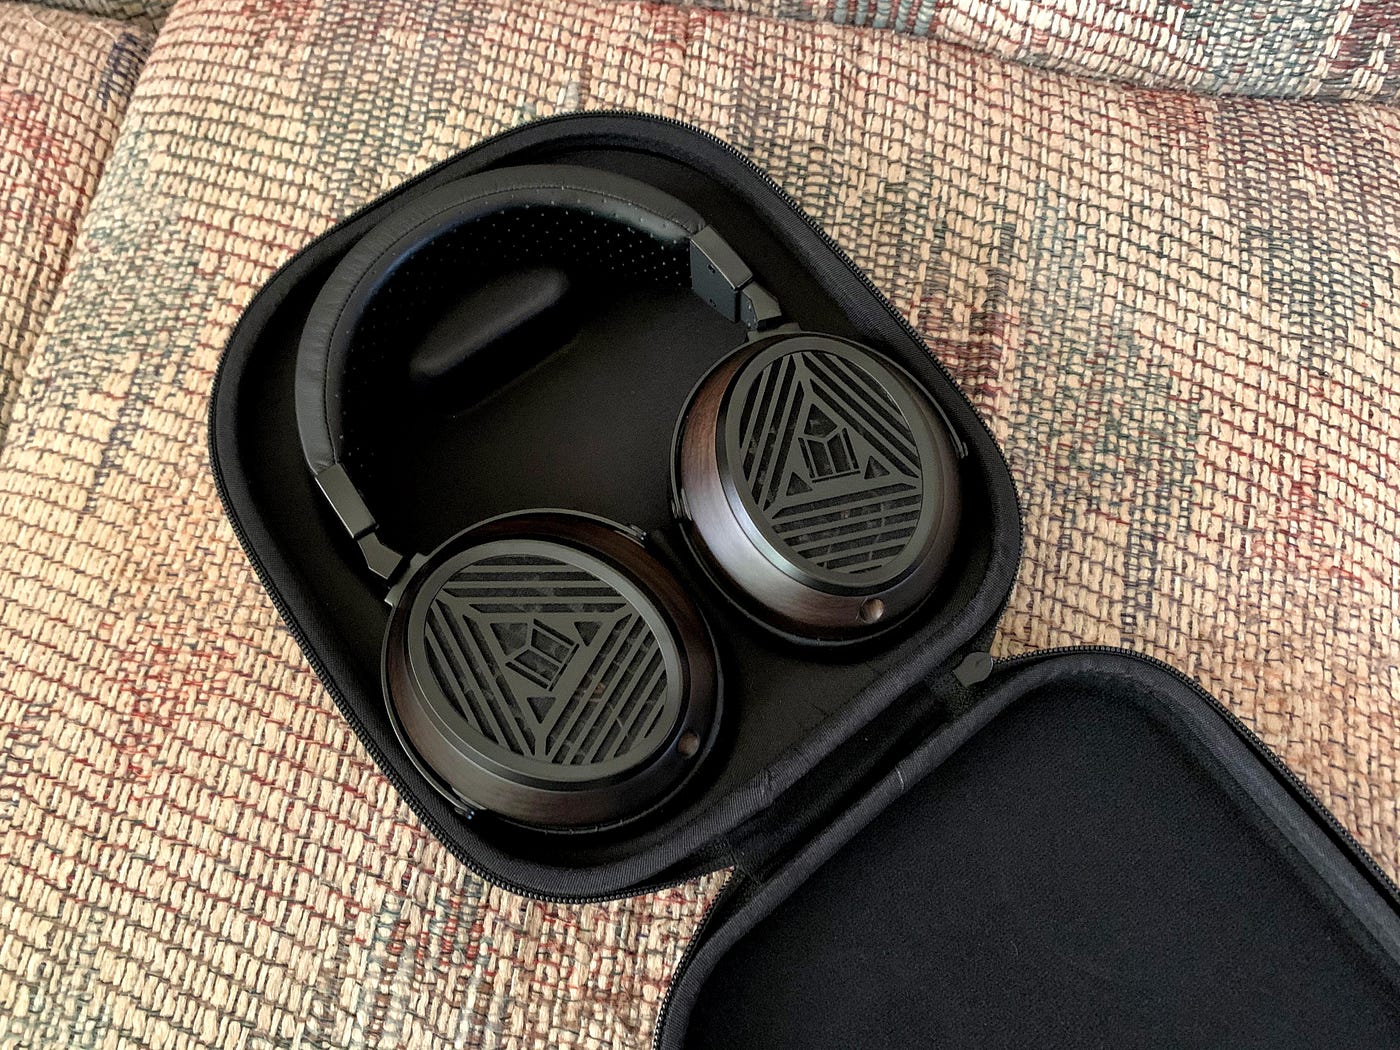 Monoprice Monolith M570 Headphones Review